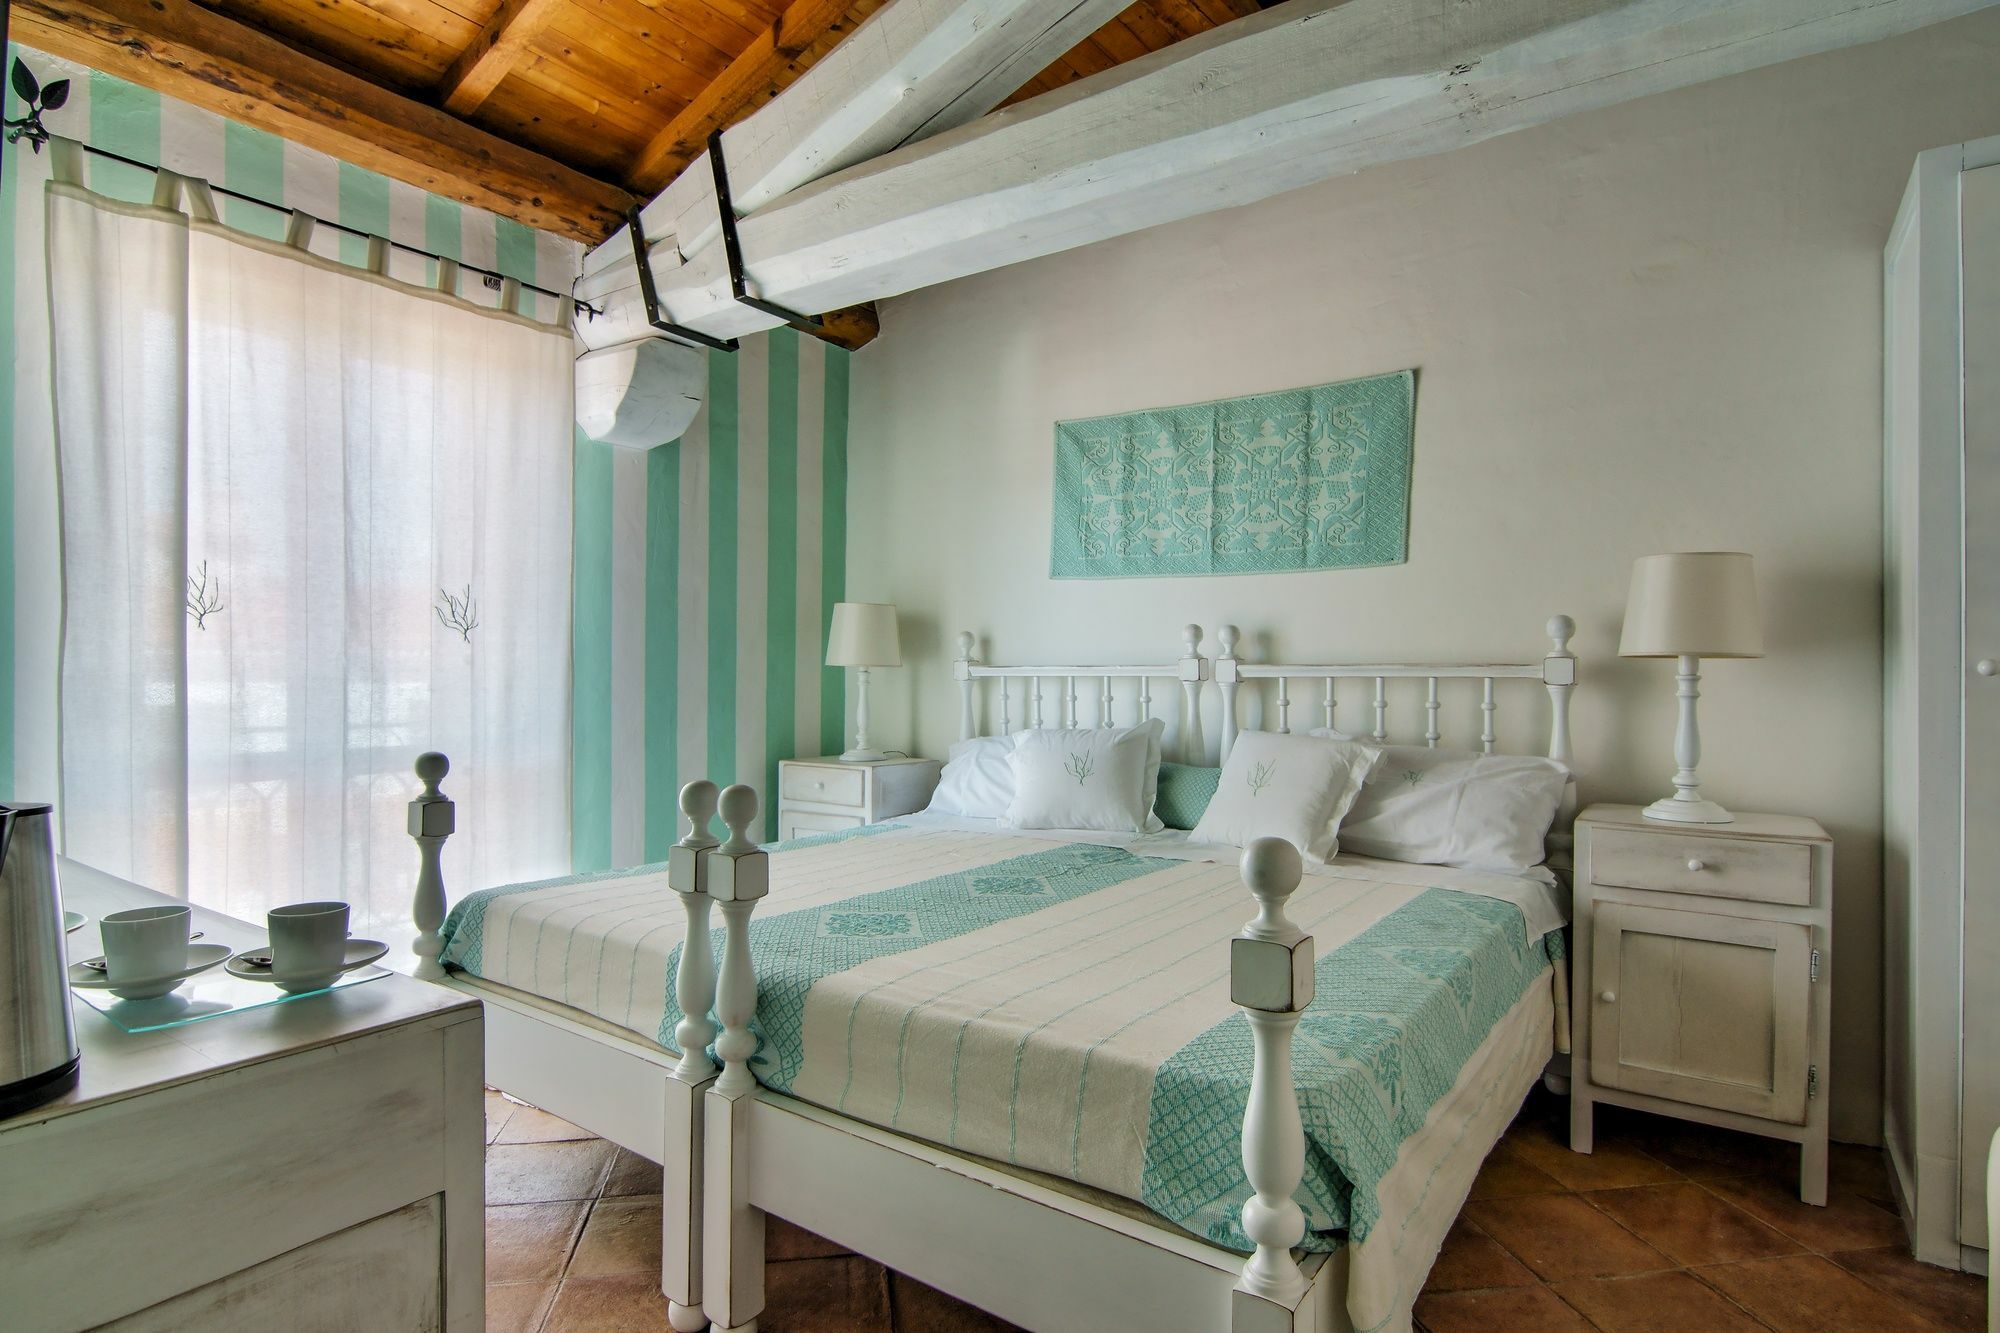 Domus Corallia-Luxury Rooms Porto Rotondo Exterior photo